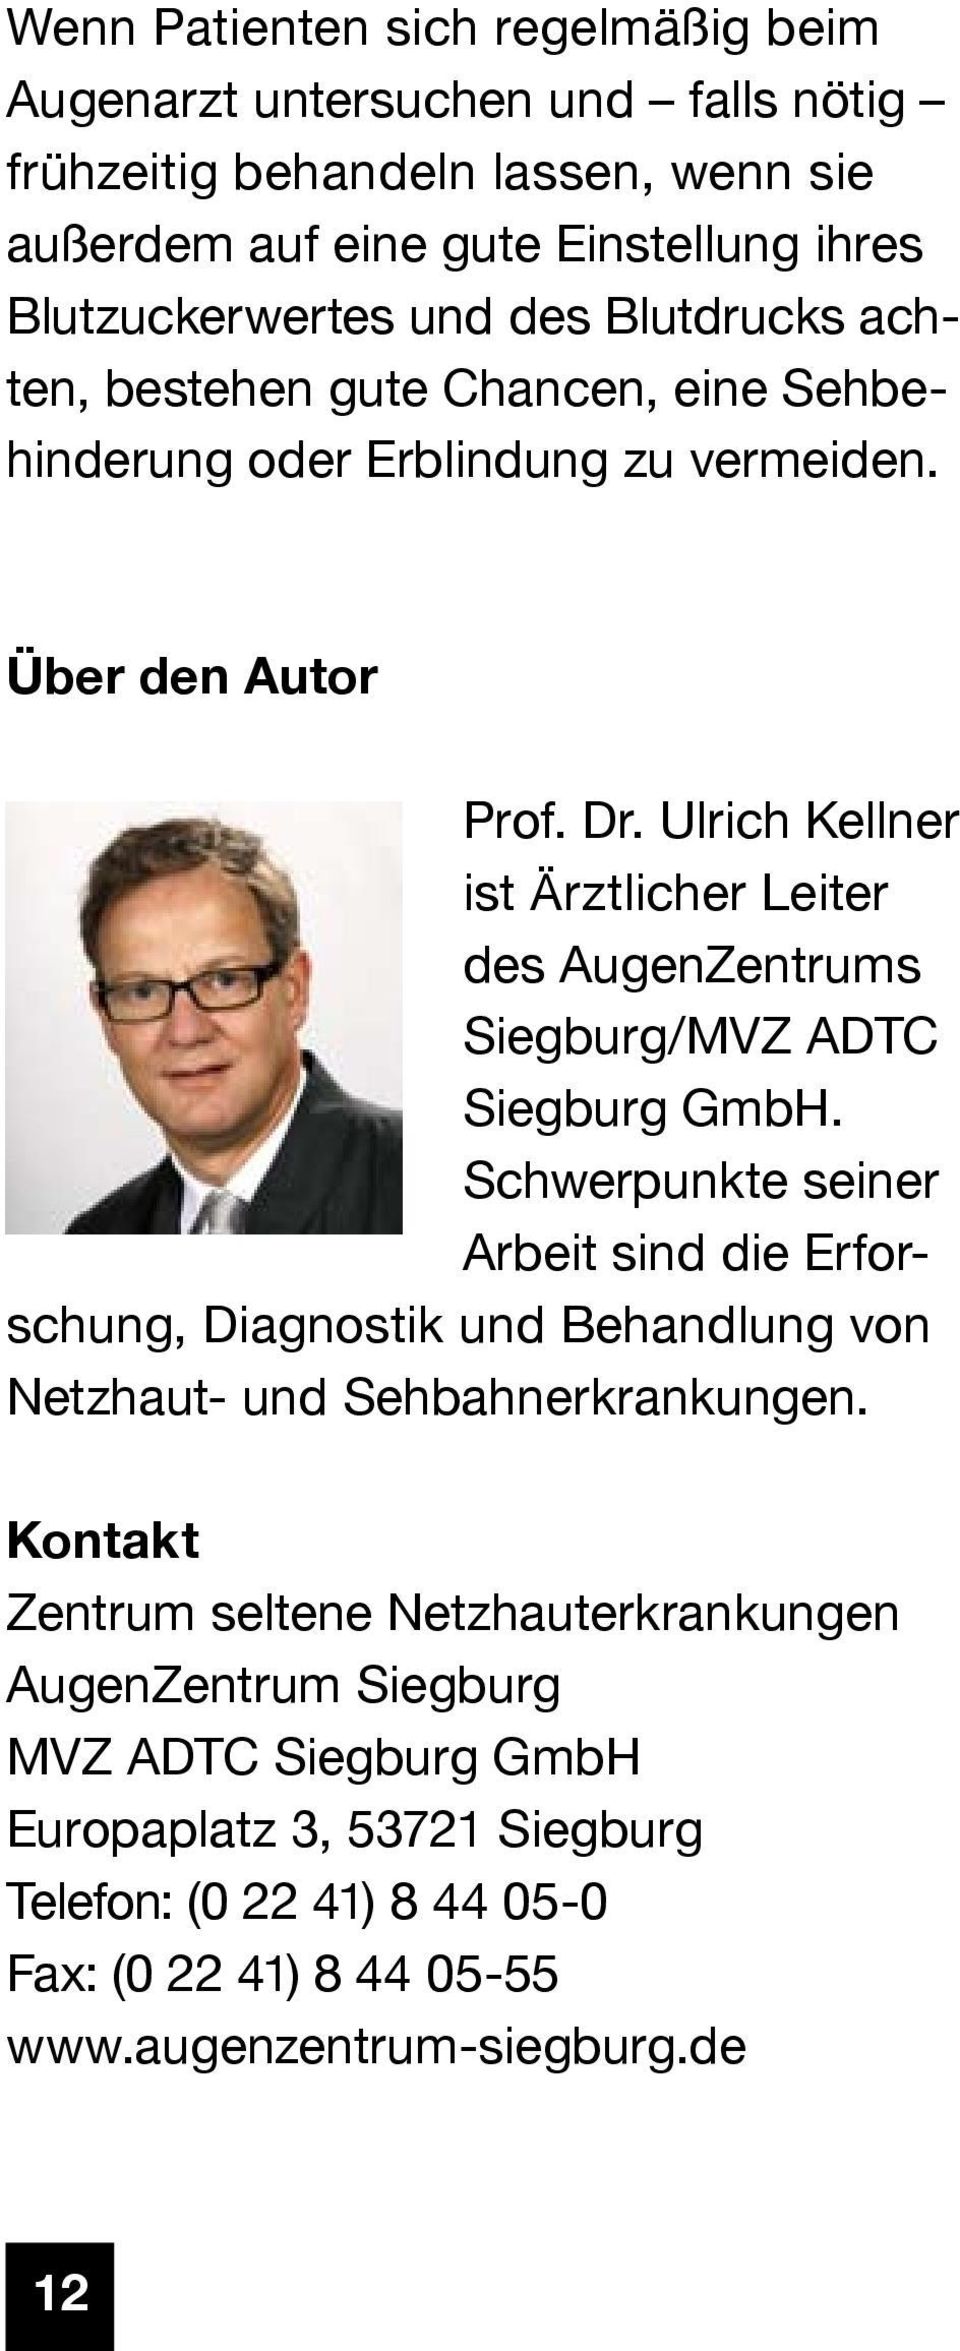 Ulrich Kellner ist Ärztlicher Leiter des AugenZentrums Siegburg/MVZ ADTC Siegburg GmbH.